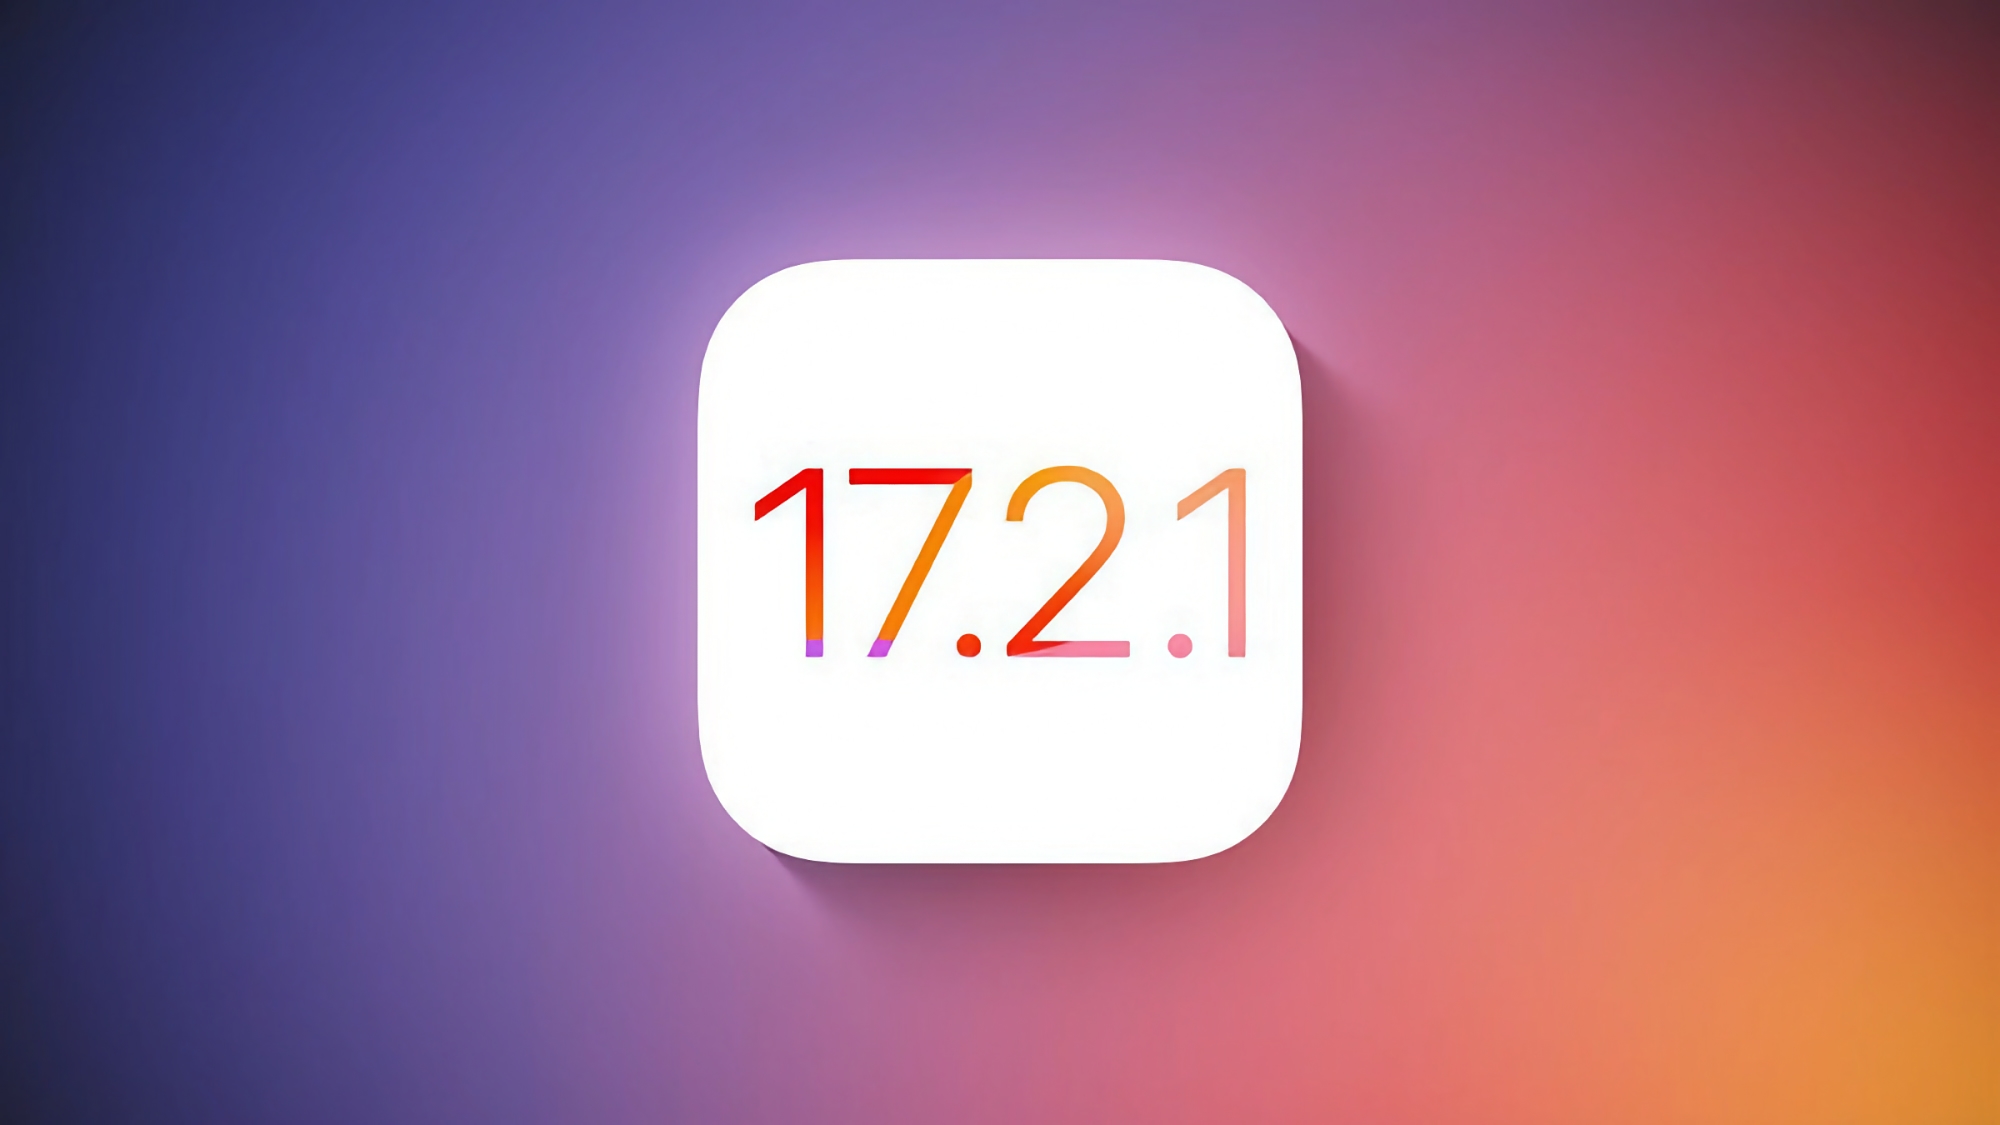 iPhone-brugere er begyndt at modtage iOS 17.2.1 med fejlrettelser